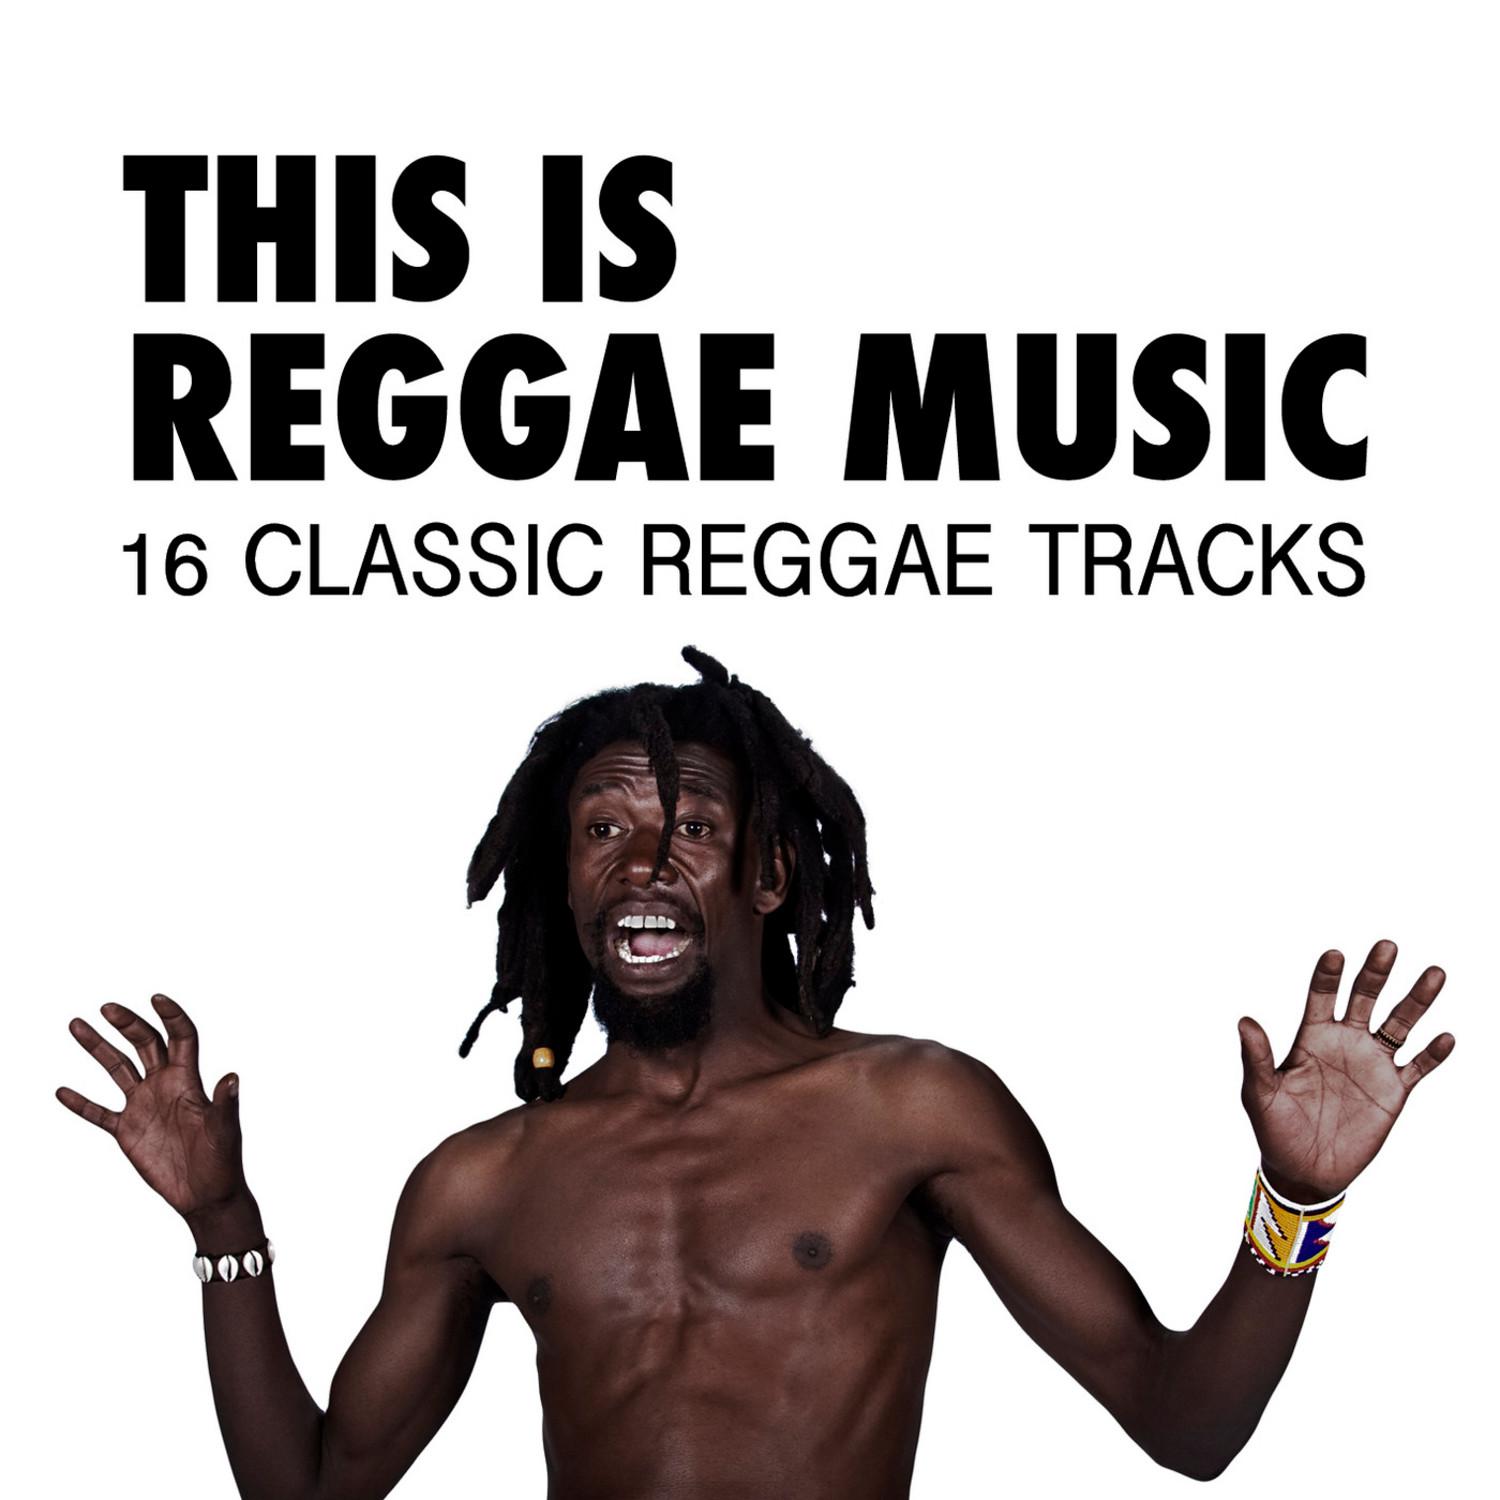 This Is Reggae Music - 16 Classic Reggae Tracks